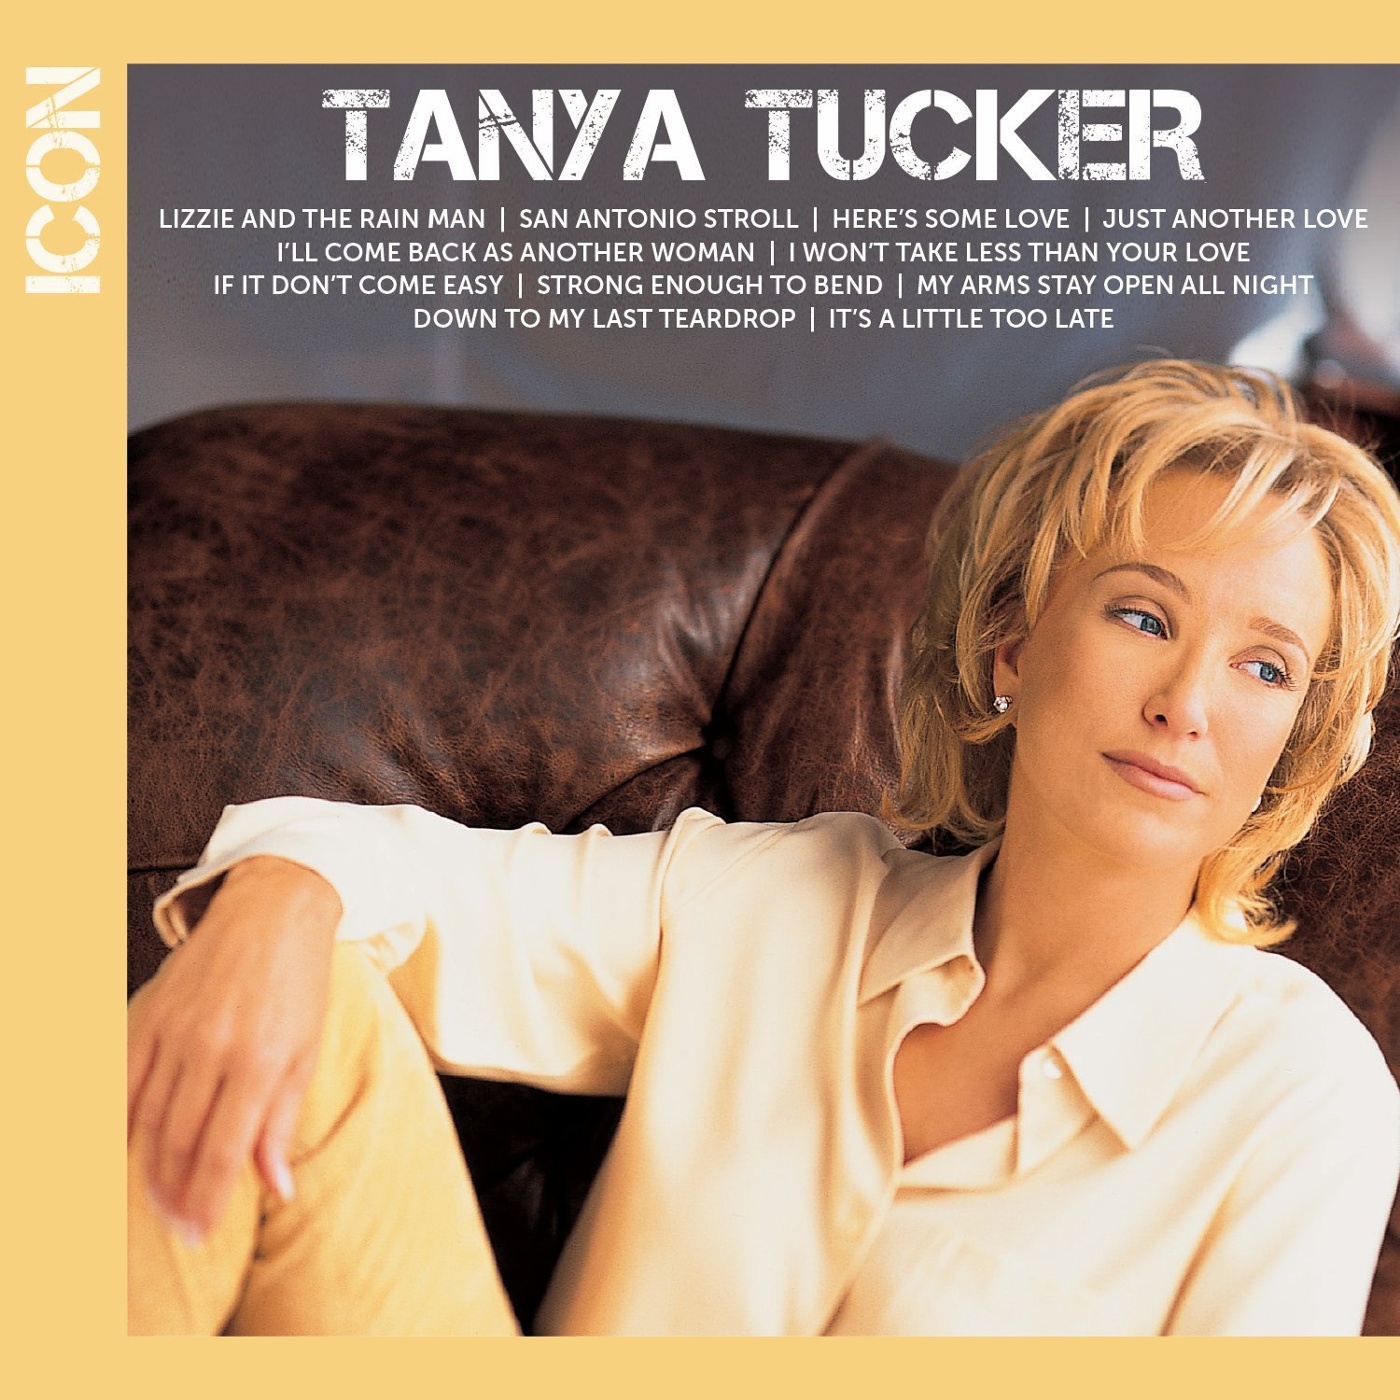 Купить альбом Tanya Tucker: Icon [CD] на компакт-диске. 🚚 Самовывоз, доста...